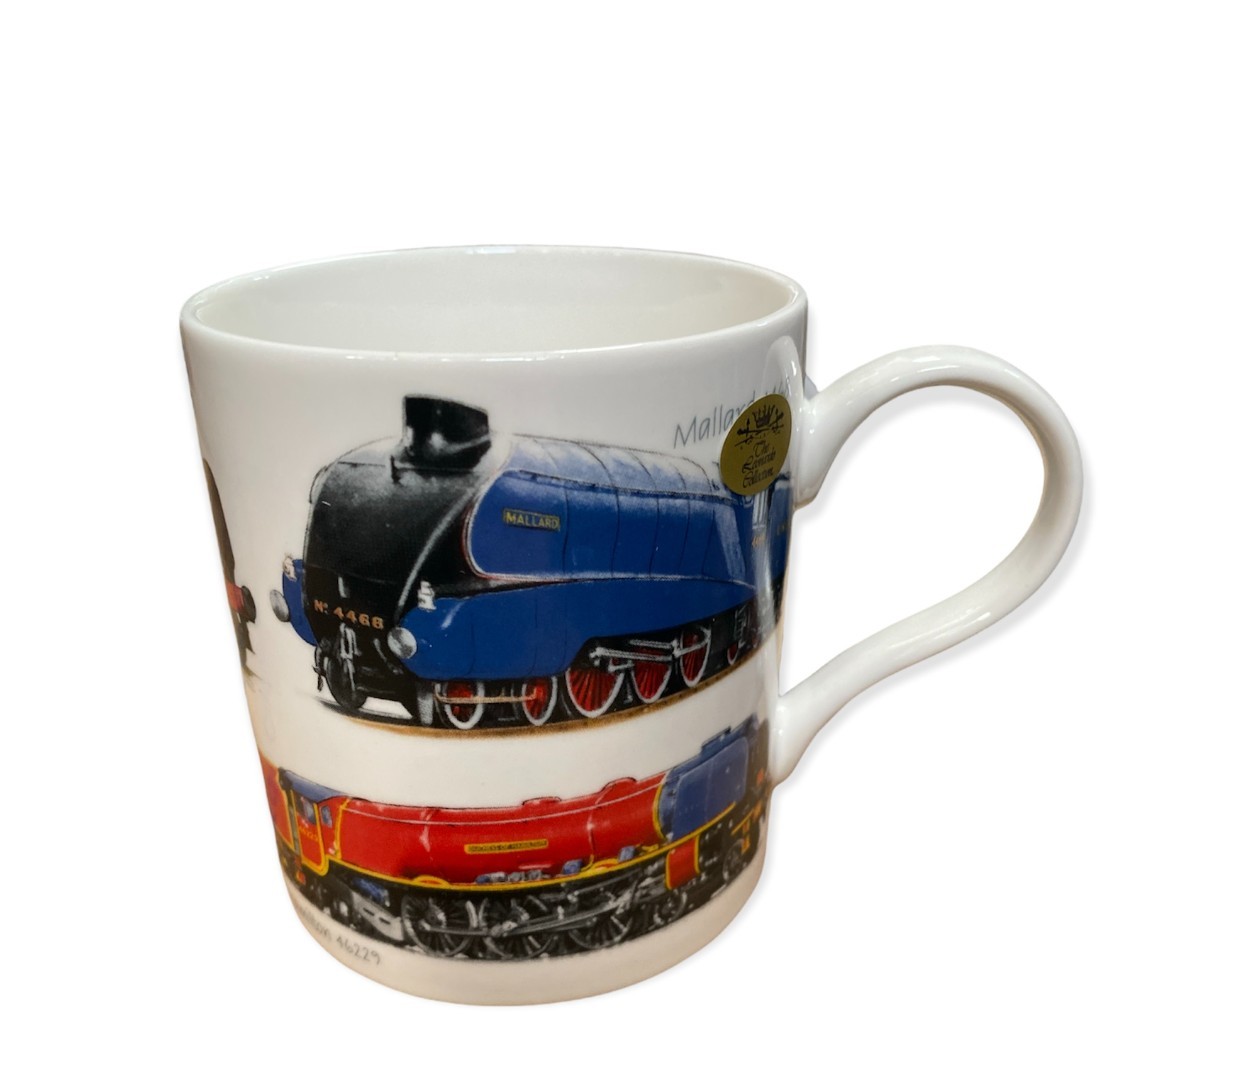 Ceramic Boxed Flying Scotsman 4476 Train Railway Mug Original Metal Sign 